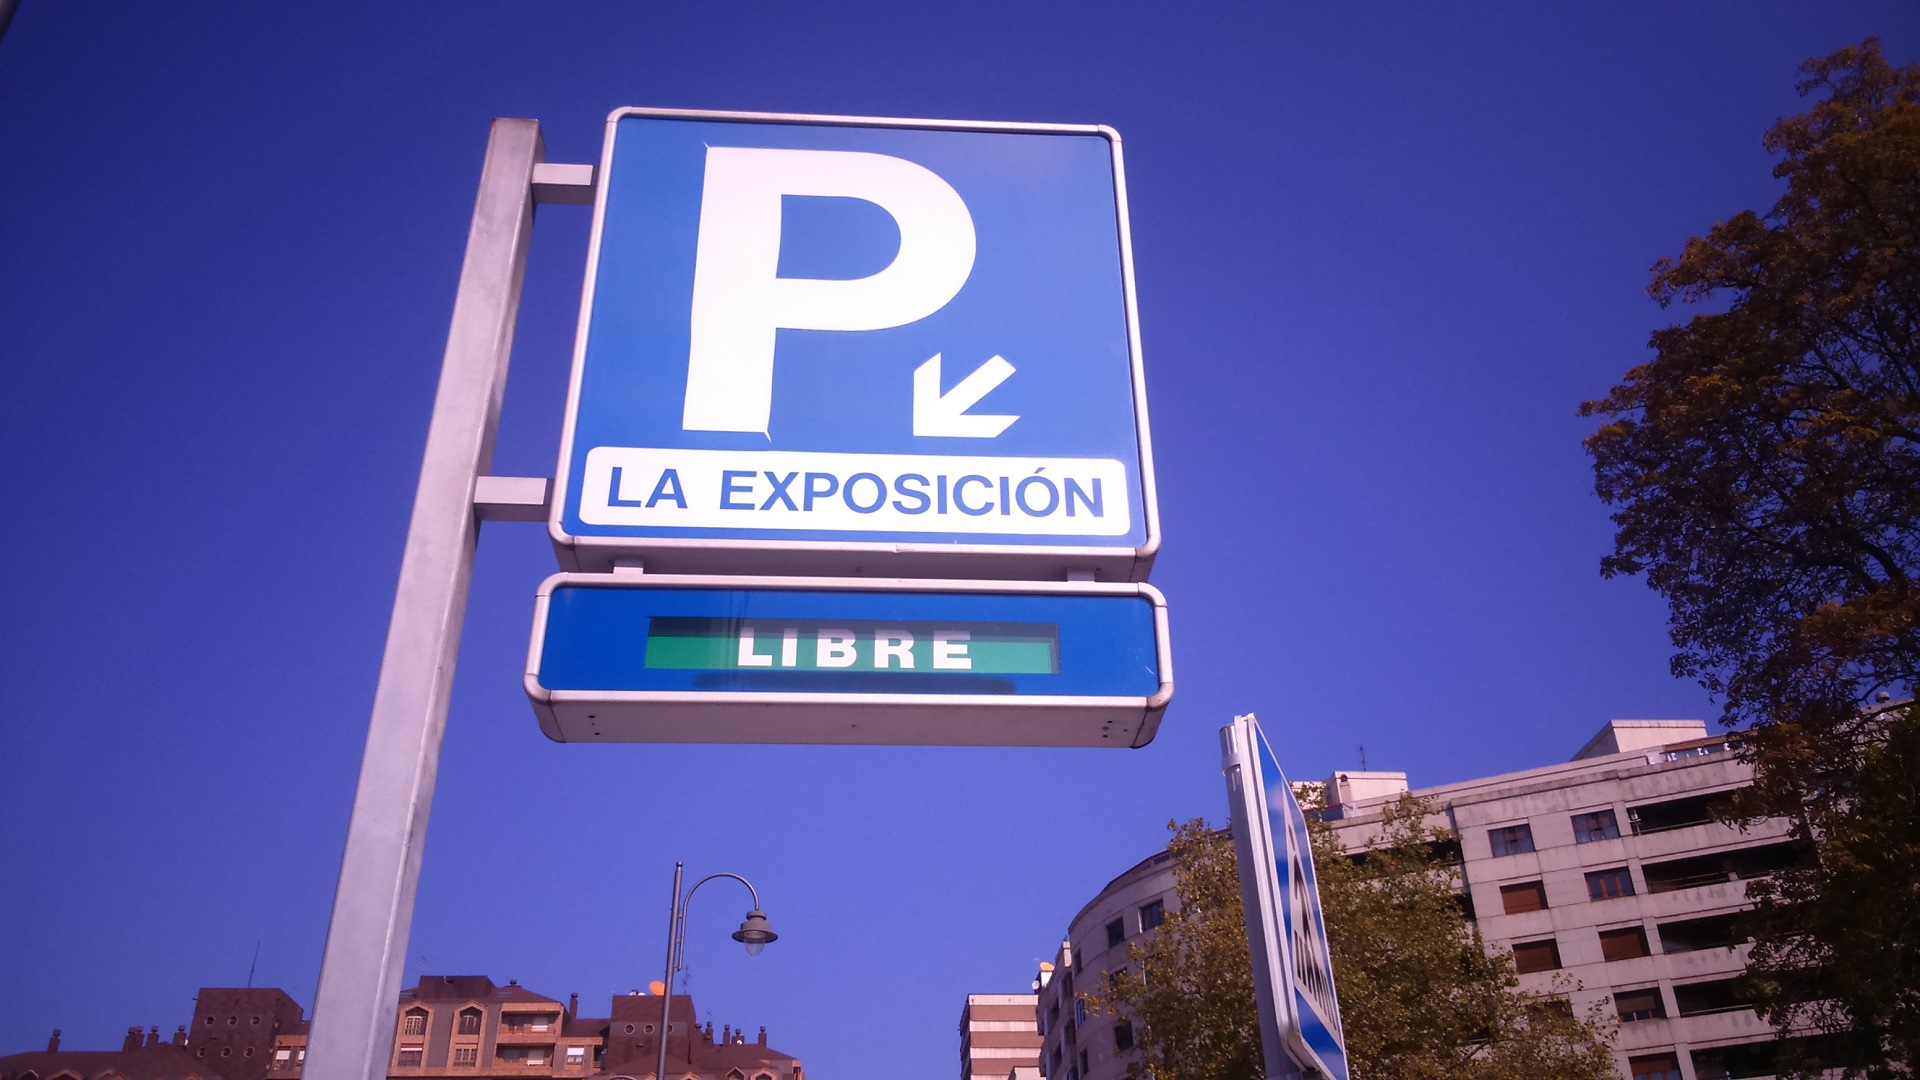 Ruasa habilitará 17 puntos de carga públicos para vehículos eléctricos en los aparcamientos de plaza de España y La Exposición